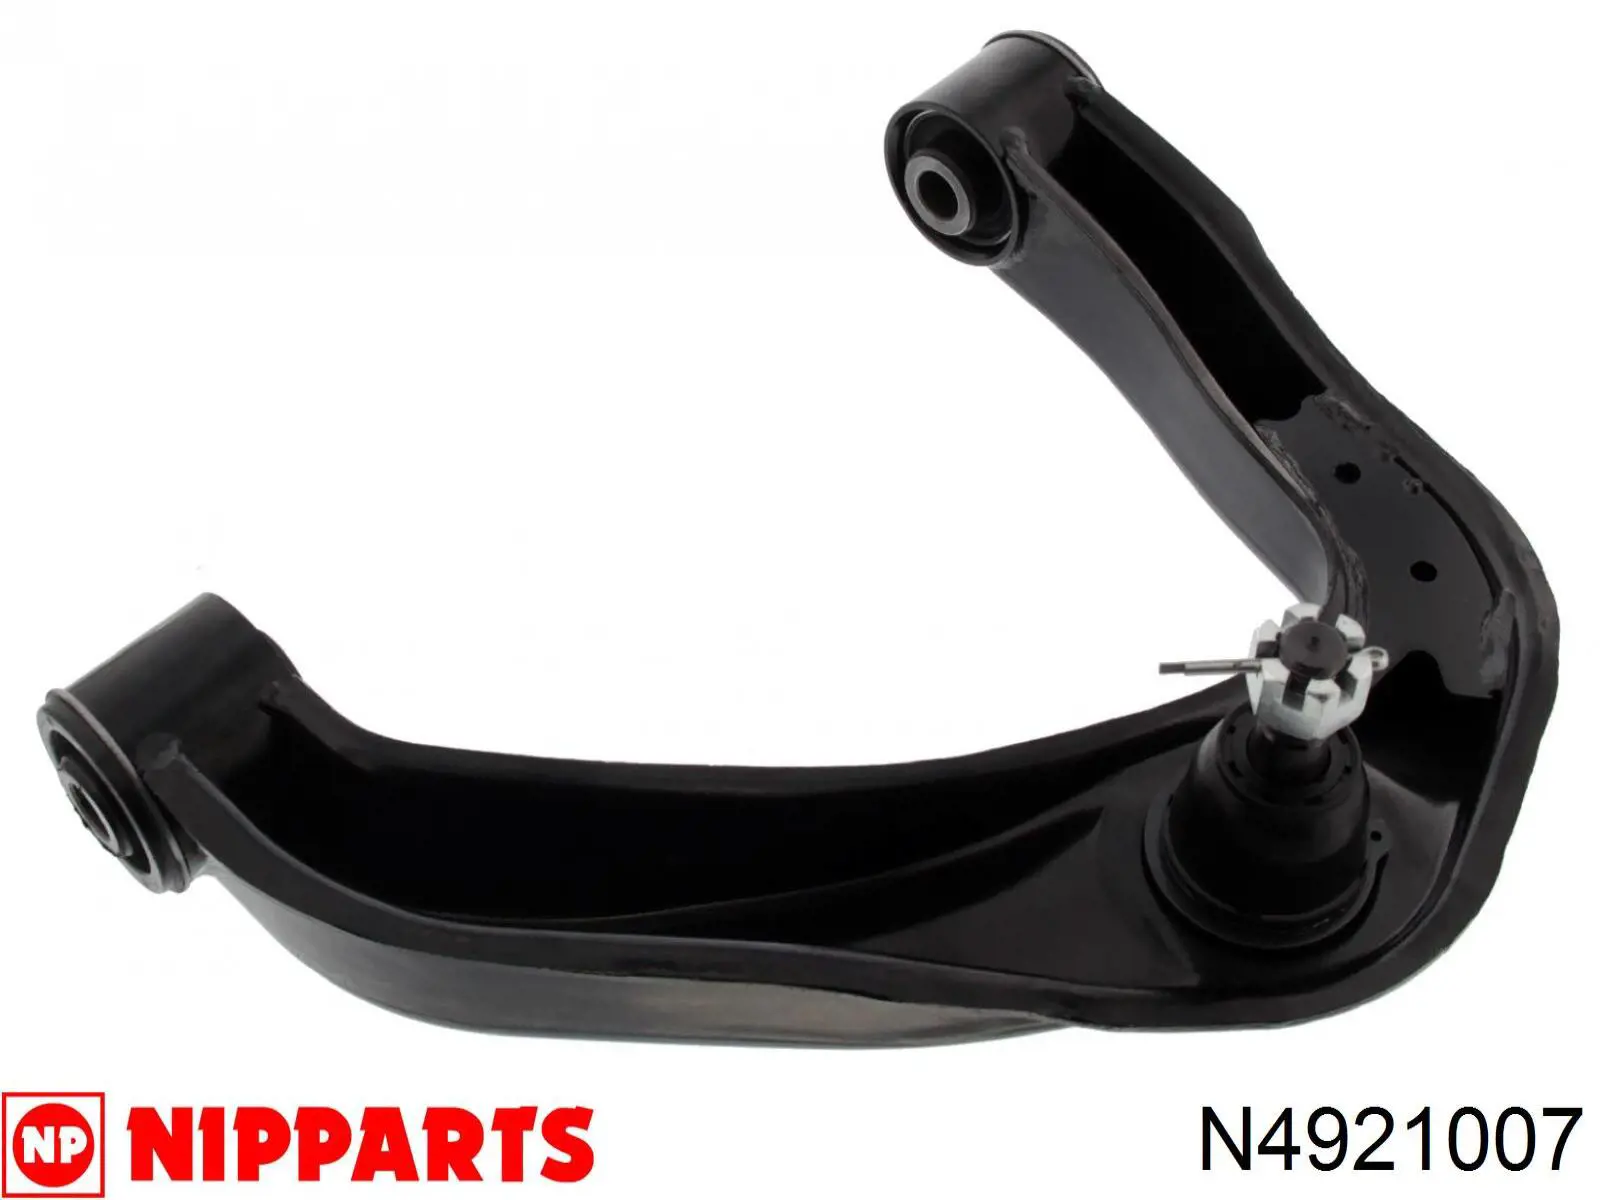 N4921007 Nipparts barra oscilante, suspensión de ruedas delantera, superior izquierda